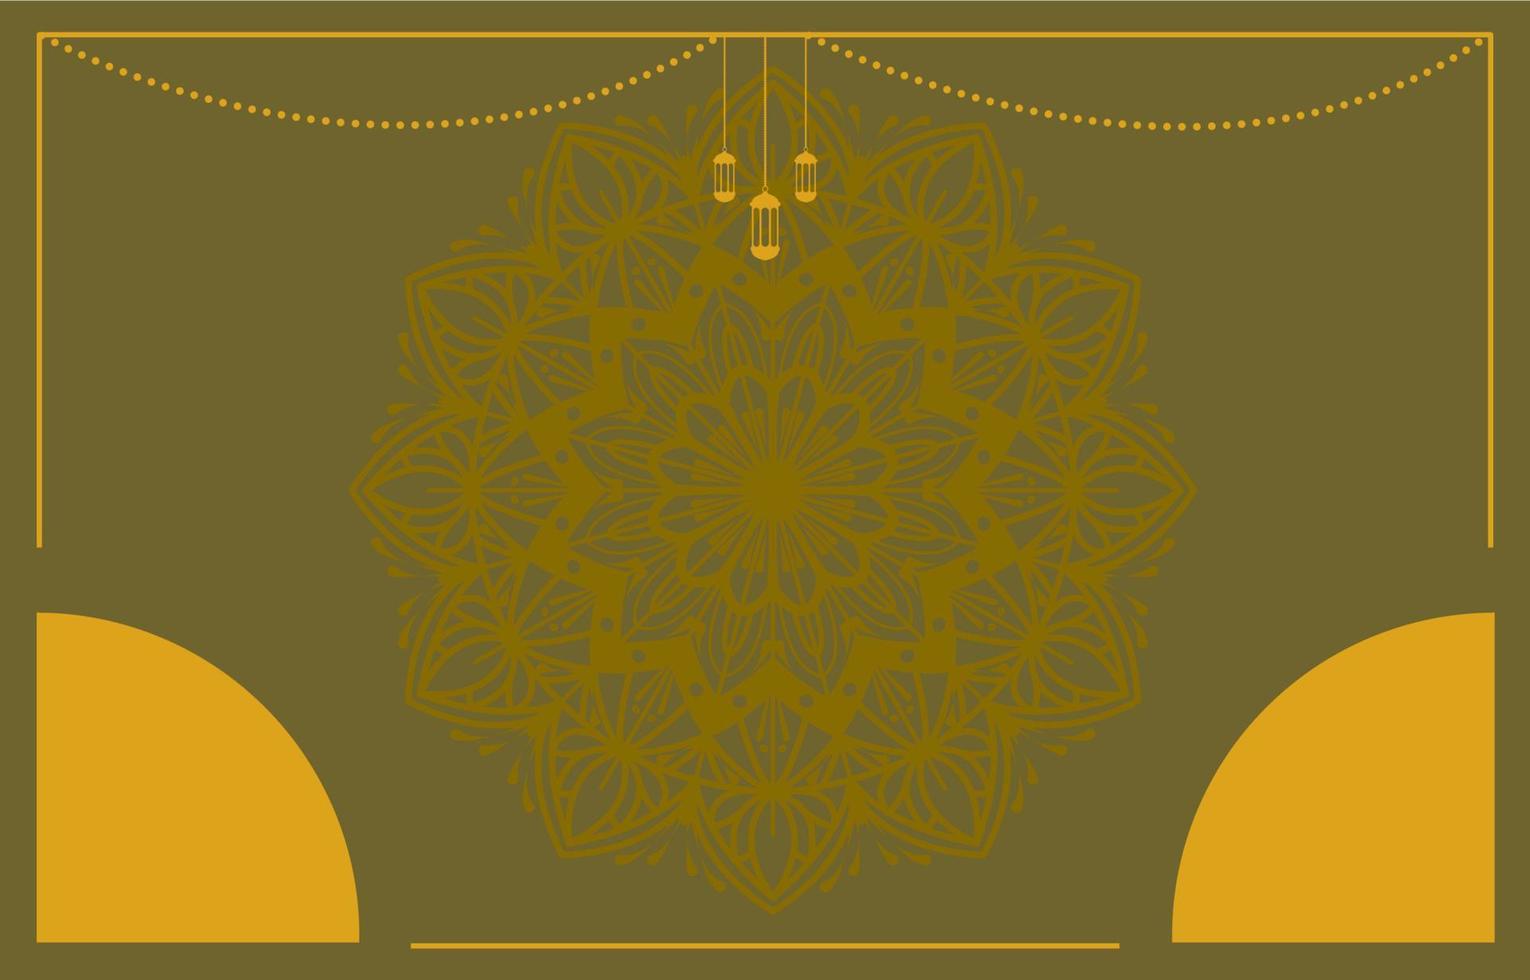 conception de vecteur de fond islamique avec décoration de mandala arabe pour la bannière du jour du ramadan kareem ou eid mubarak, muharram